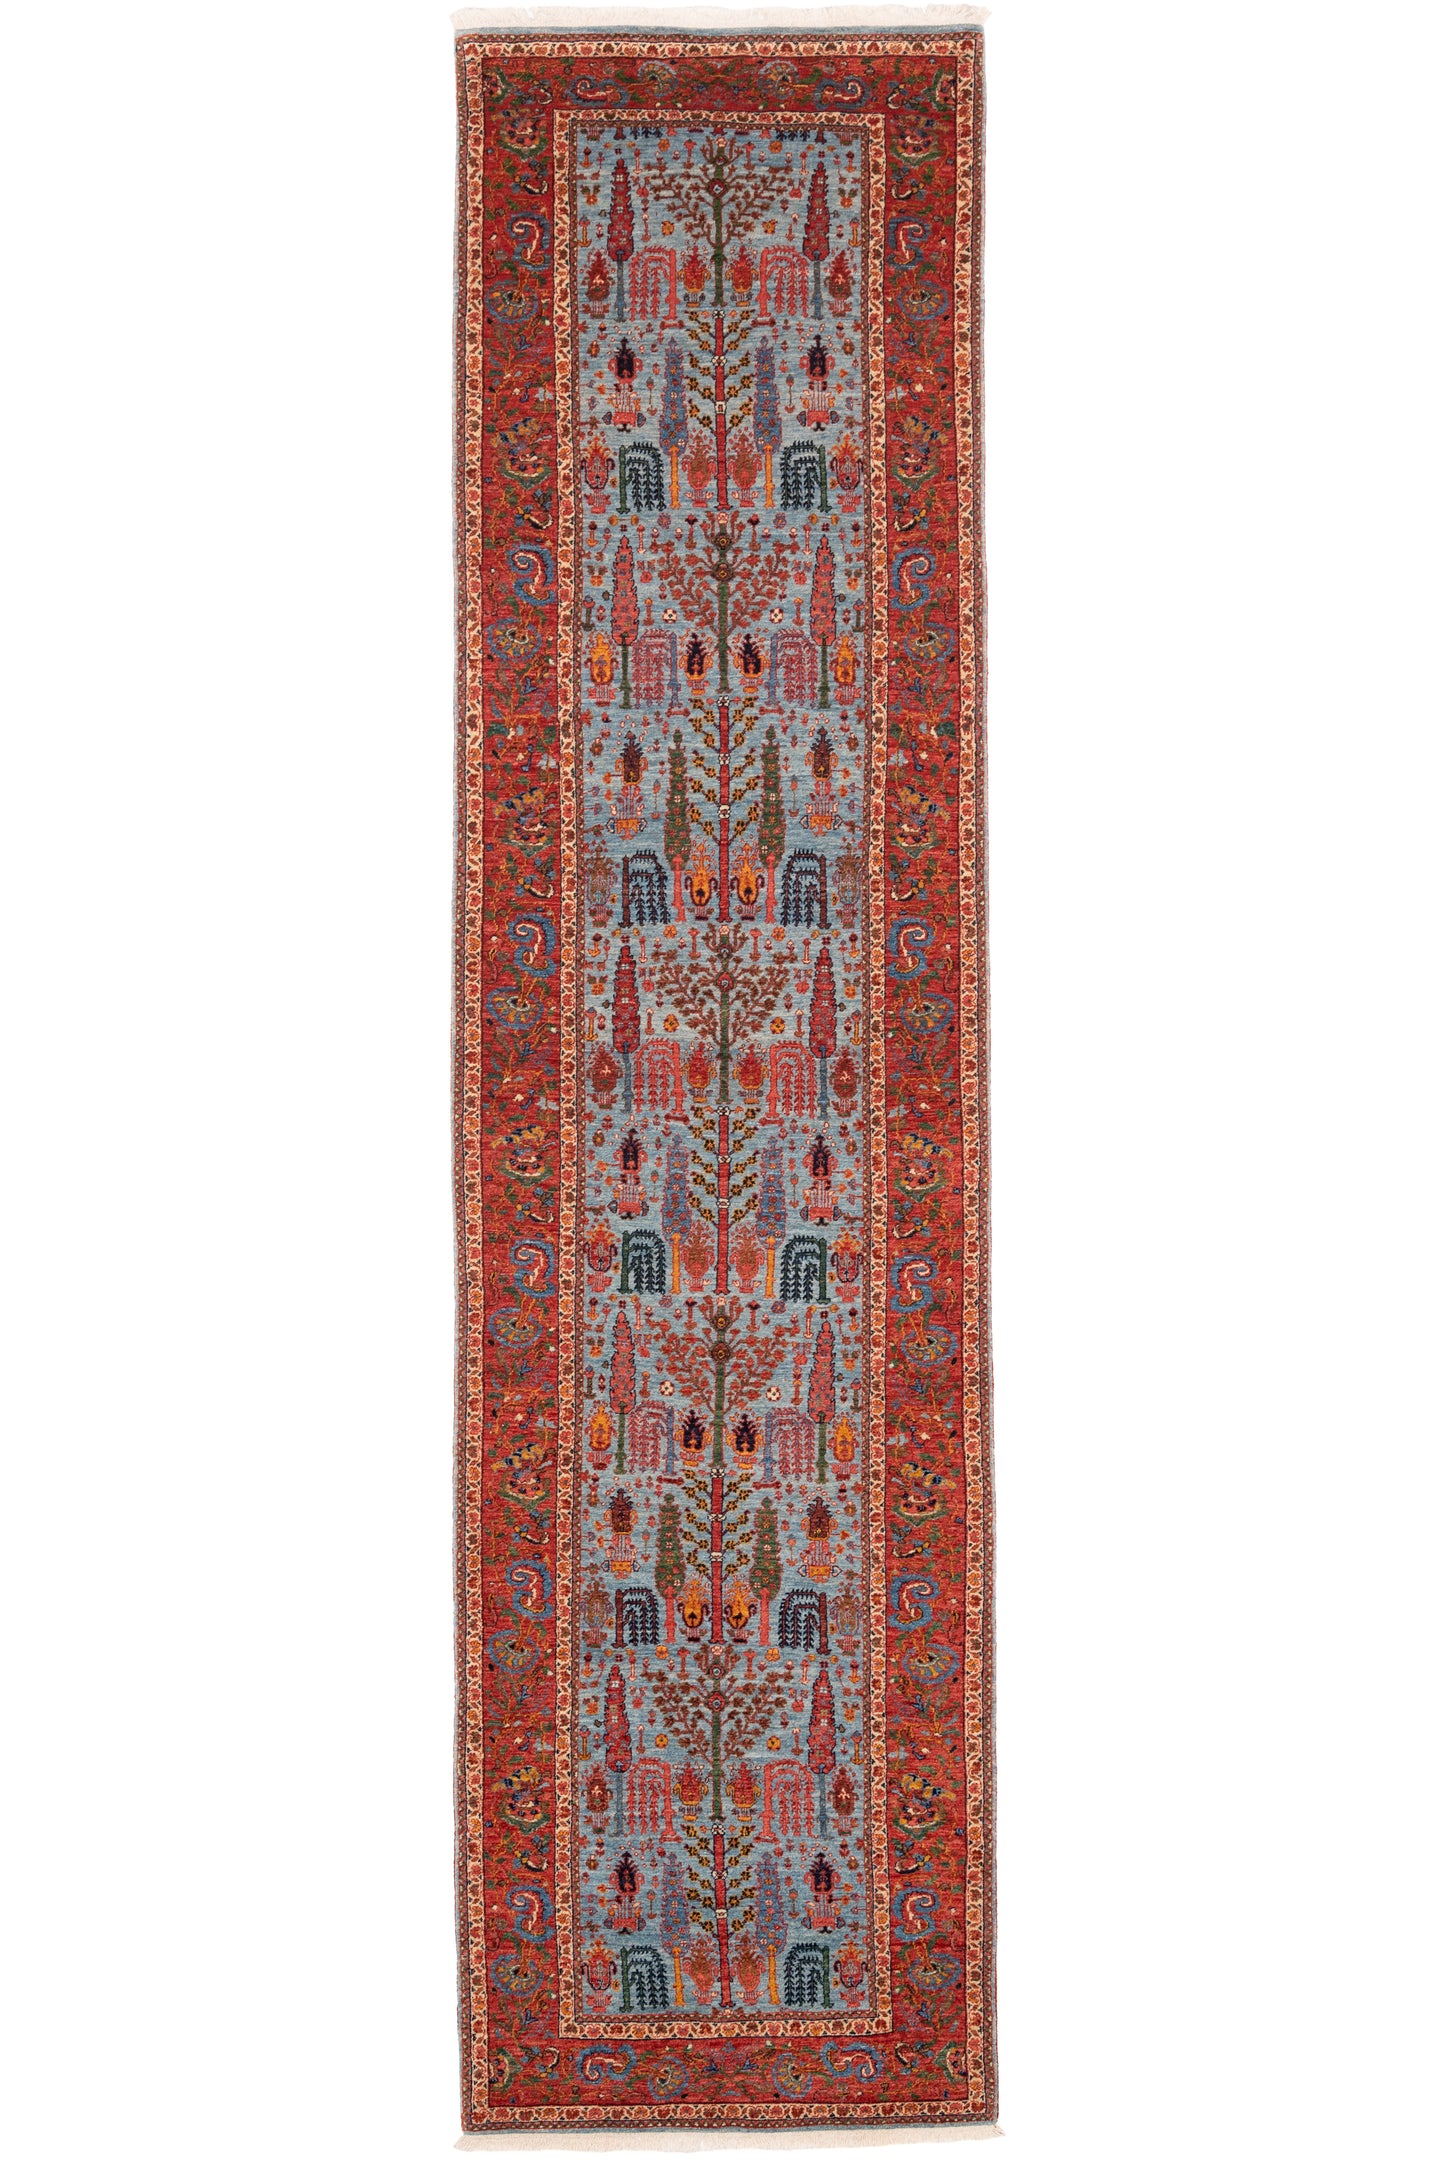 Bidjar Mirzai, 344 × 87 cm